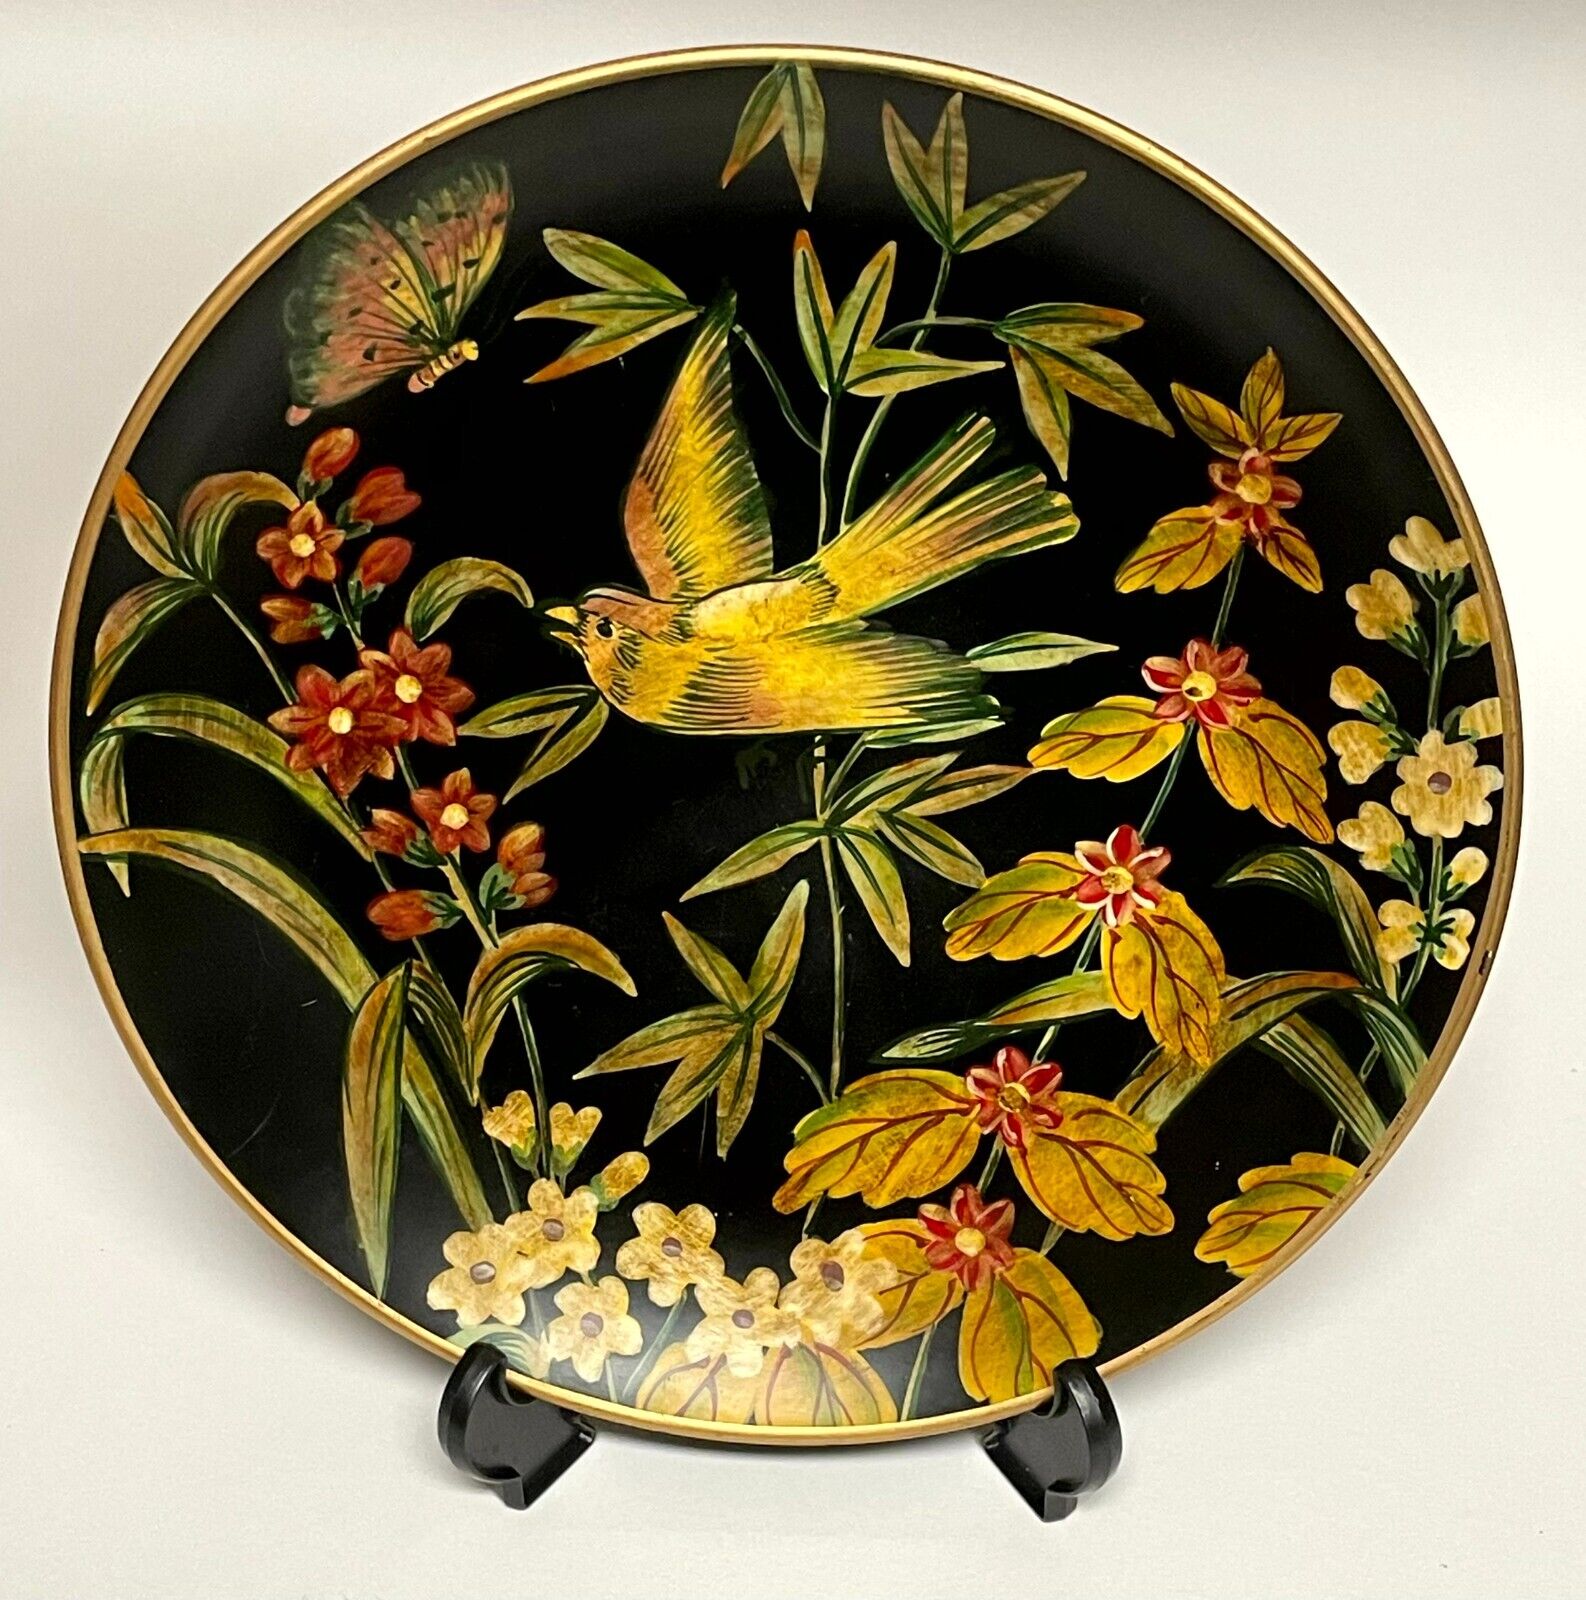 Raymond Waites Toyo Trading Company Decorative Bird Plates - Five Available